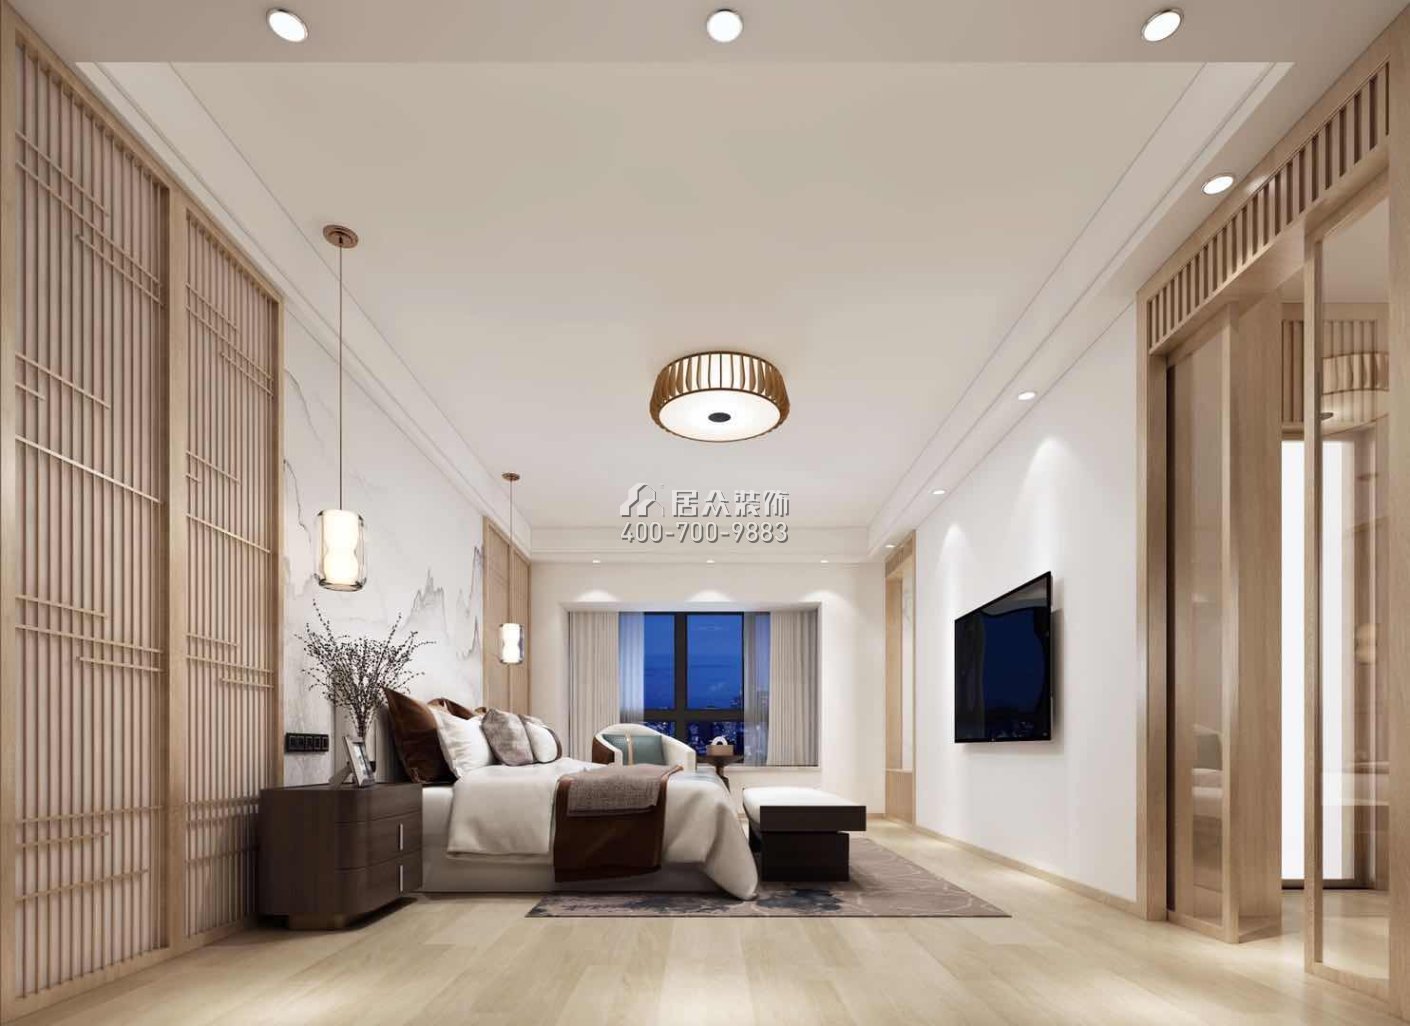 中海银海湾460平方米中式风格复式户型卧室装修效果图